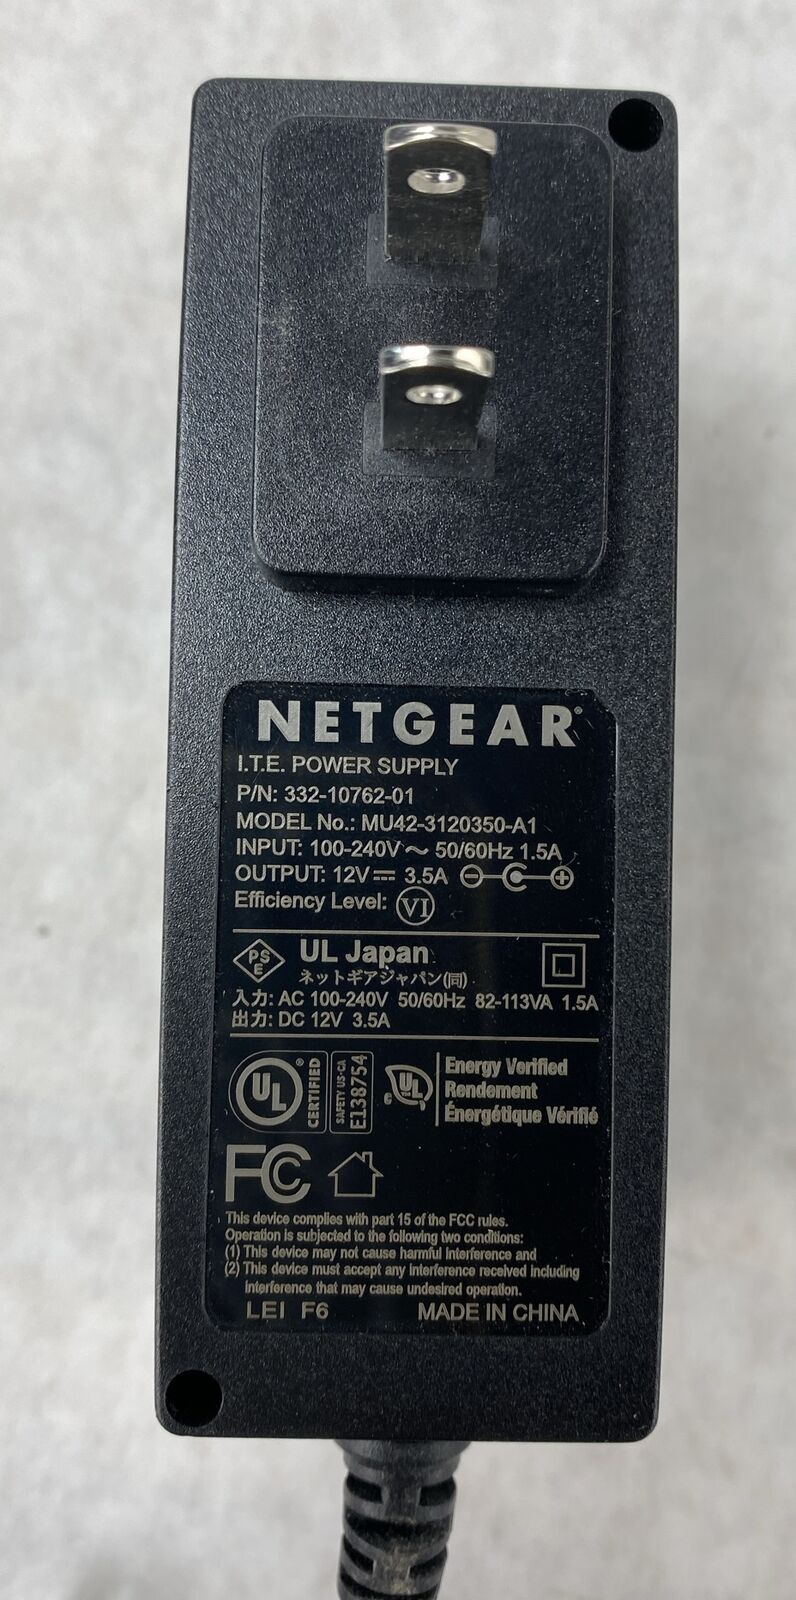 NetGear Nighthawk R7000 AC1900 Smart WiFi Router